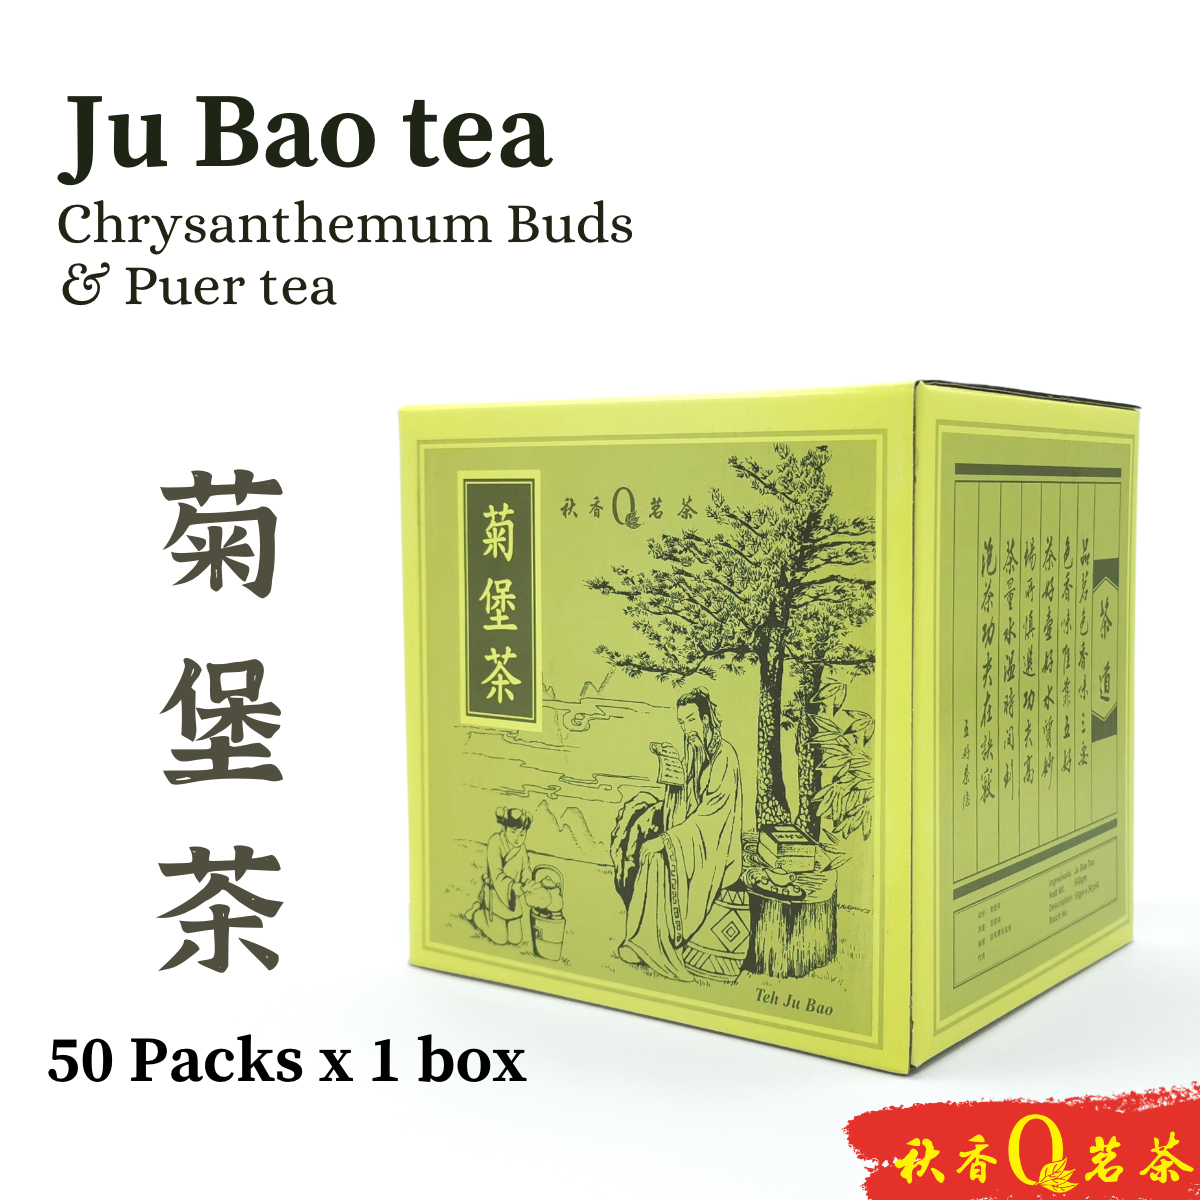 菊堡茶 Ju Bao Tea 【50 packs x 10g】|【调配茶 Blended tea】